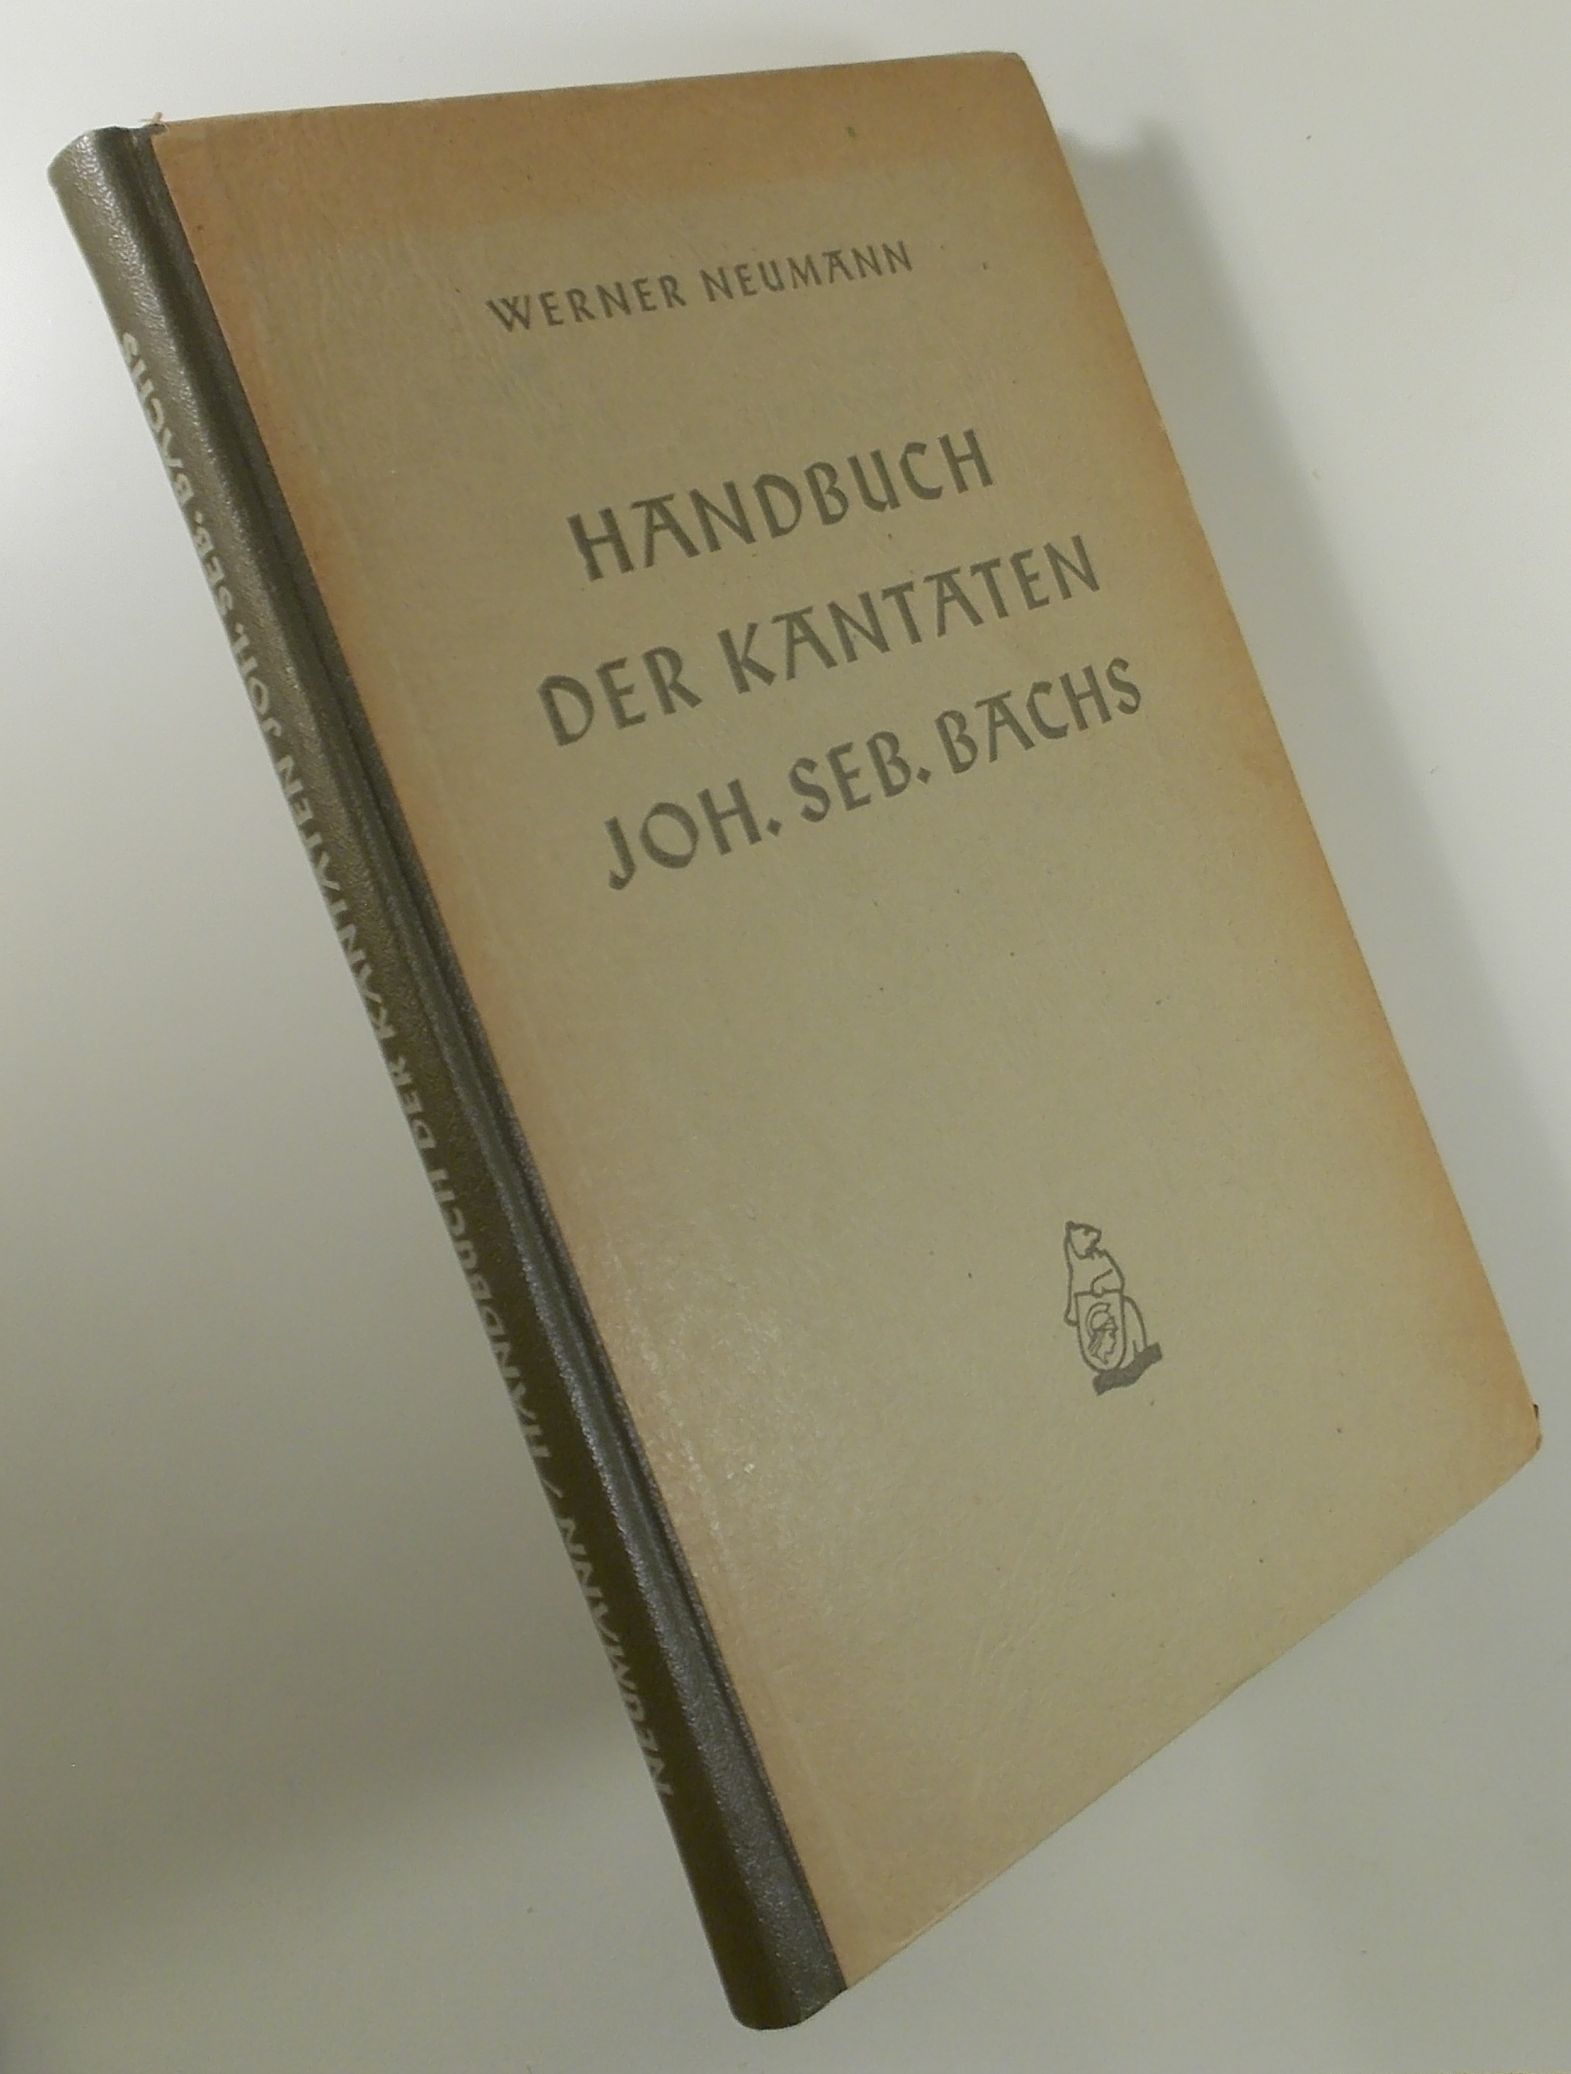 Handbuch der Kantaten Johann Sebastian Bachs - NEUMANN, Werner